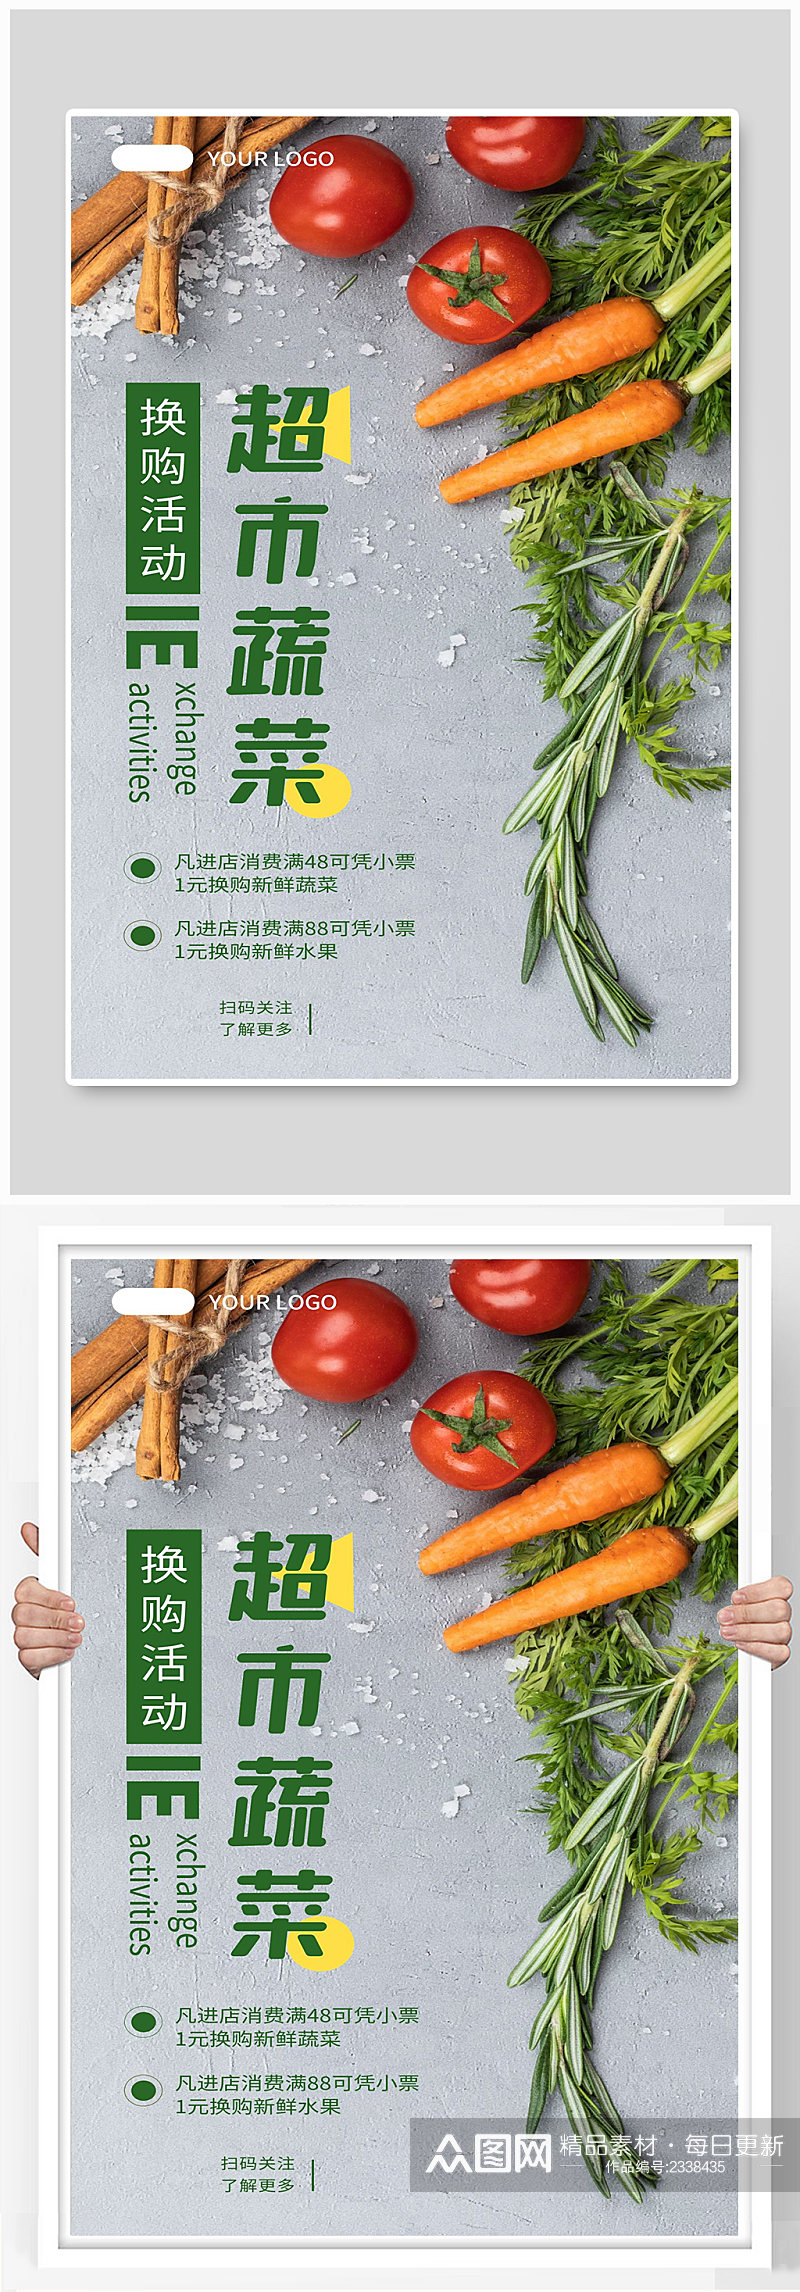 超市蔬菜宣传海报设计制作素材